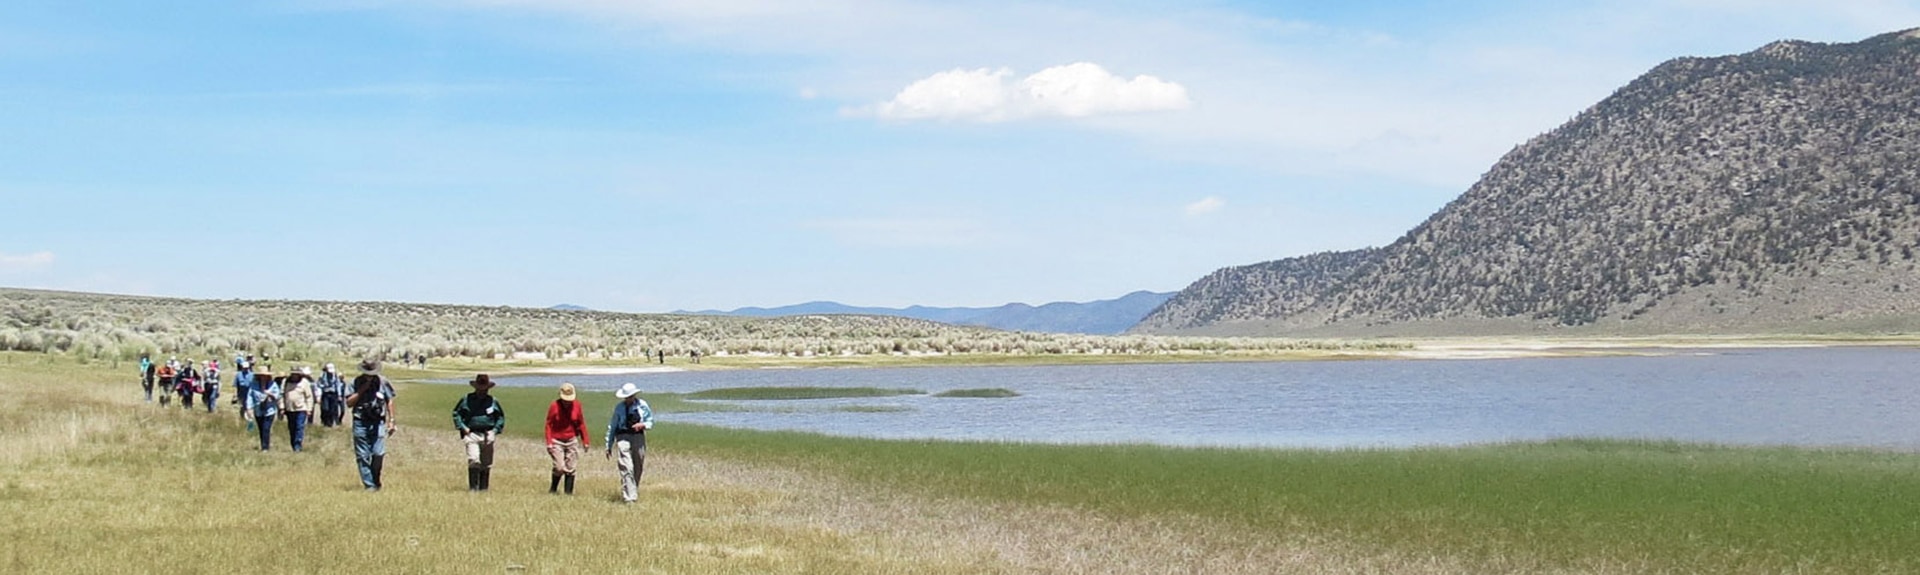 Visit protected lands like Black Lake Preserve.